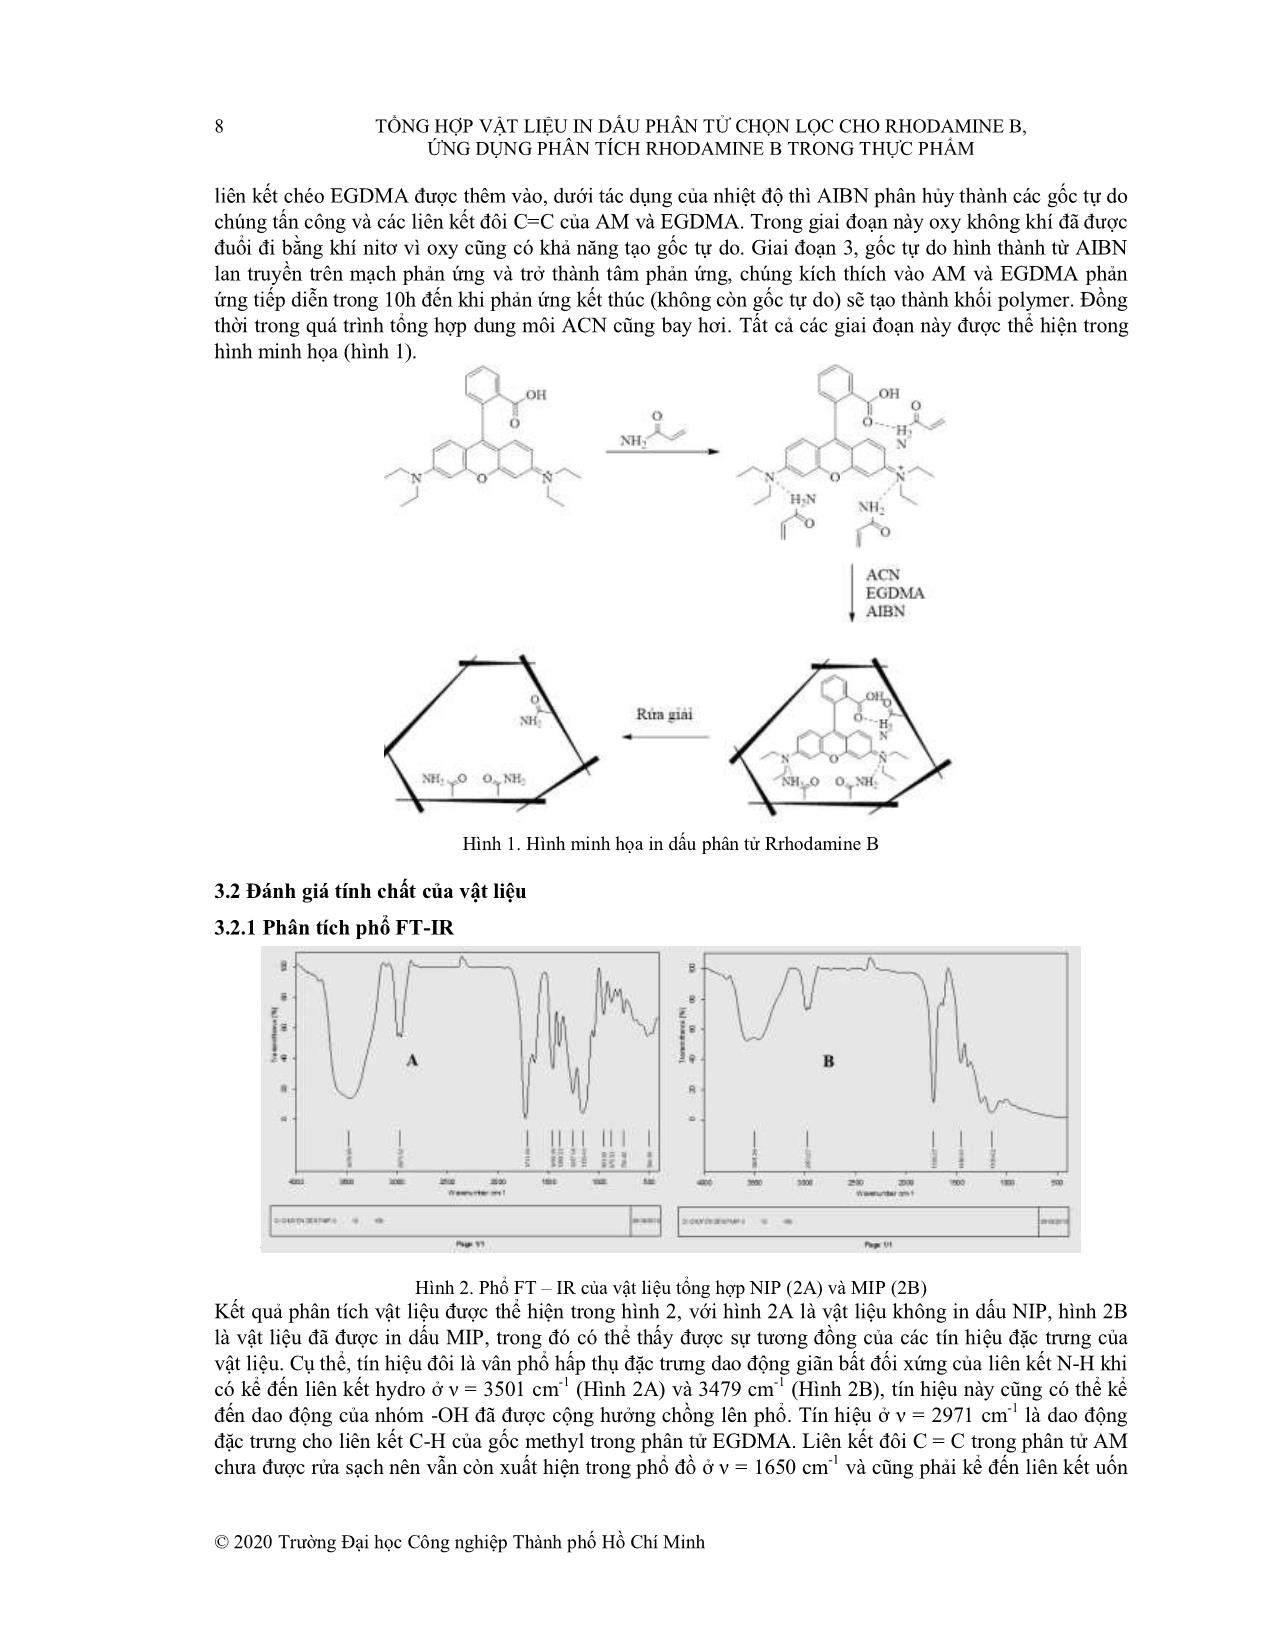 Tổng hợp vật liệu in dấu phân tử chọn lọc cho rhodamine B, ứng dụng phân tích rhodamine b trong thực phẩm trang 4